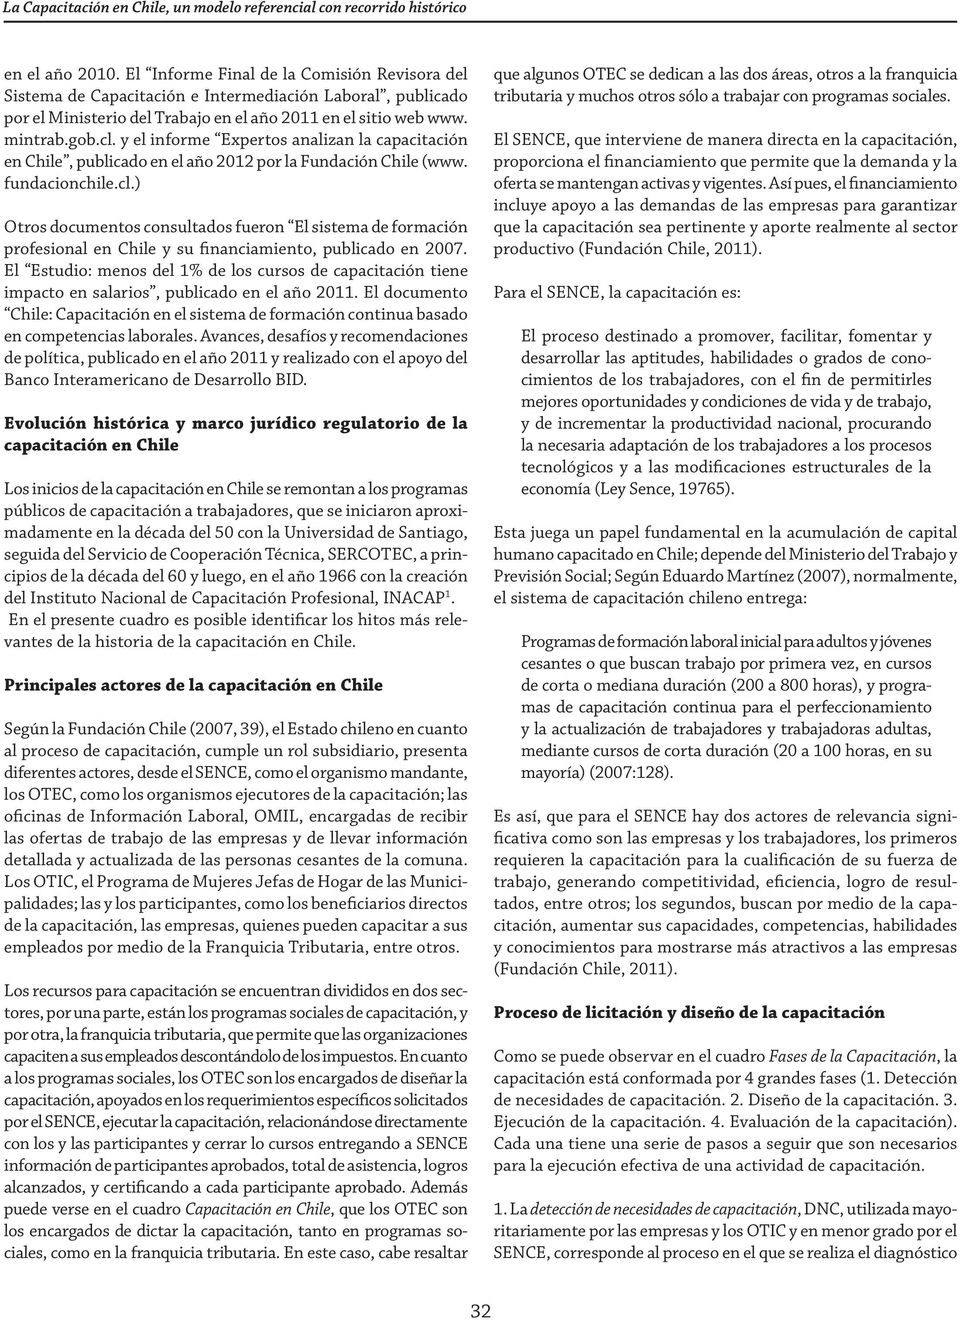 y el informe Expertos analizan la capacitación en Chile, publicado en el año 2012 por la Fundación Chile (www. fundacionchile.cl.